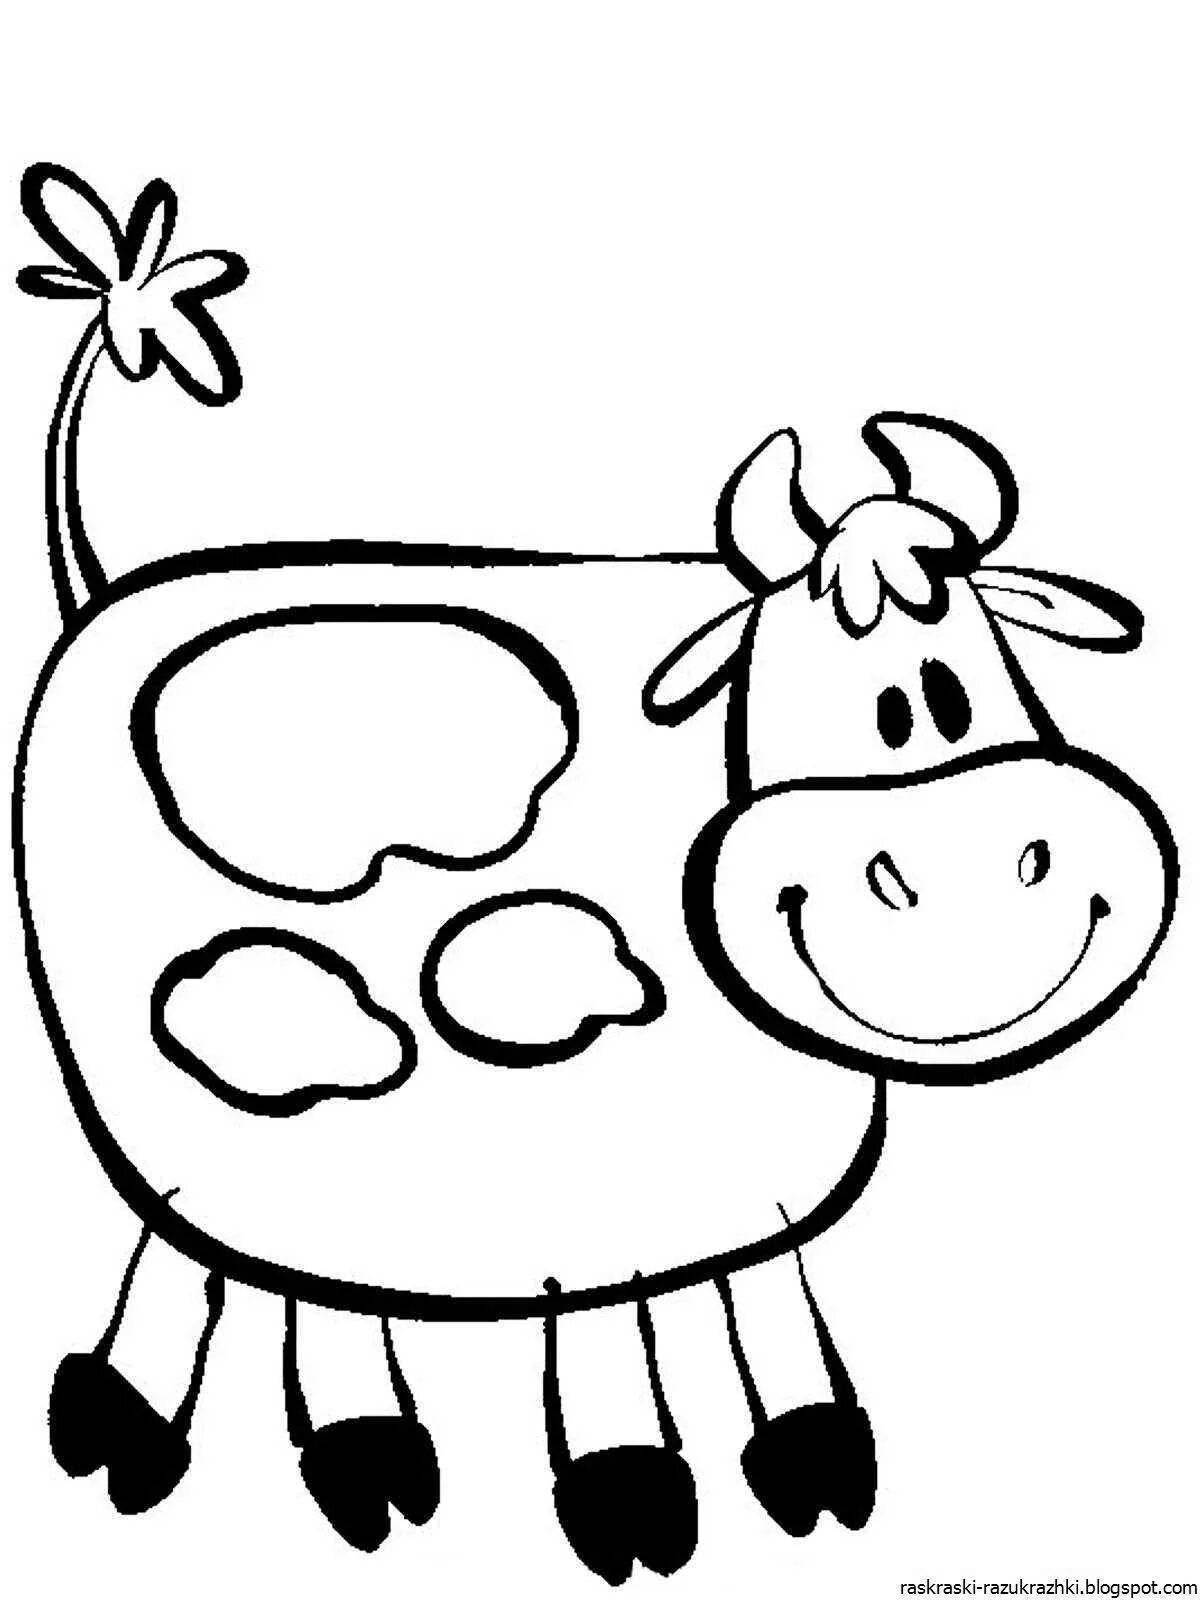 Веселый рисунок коровы для детей